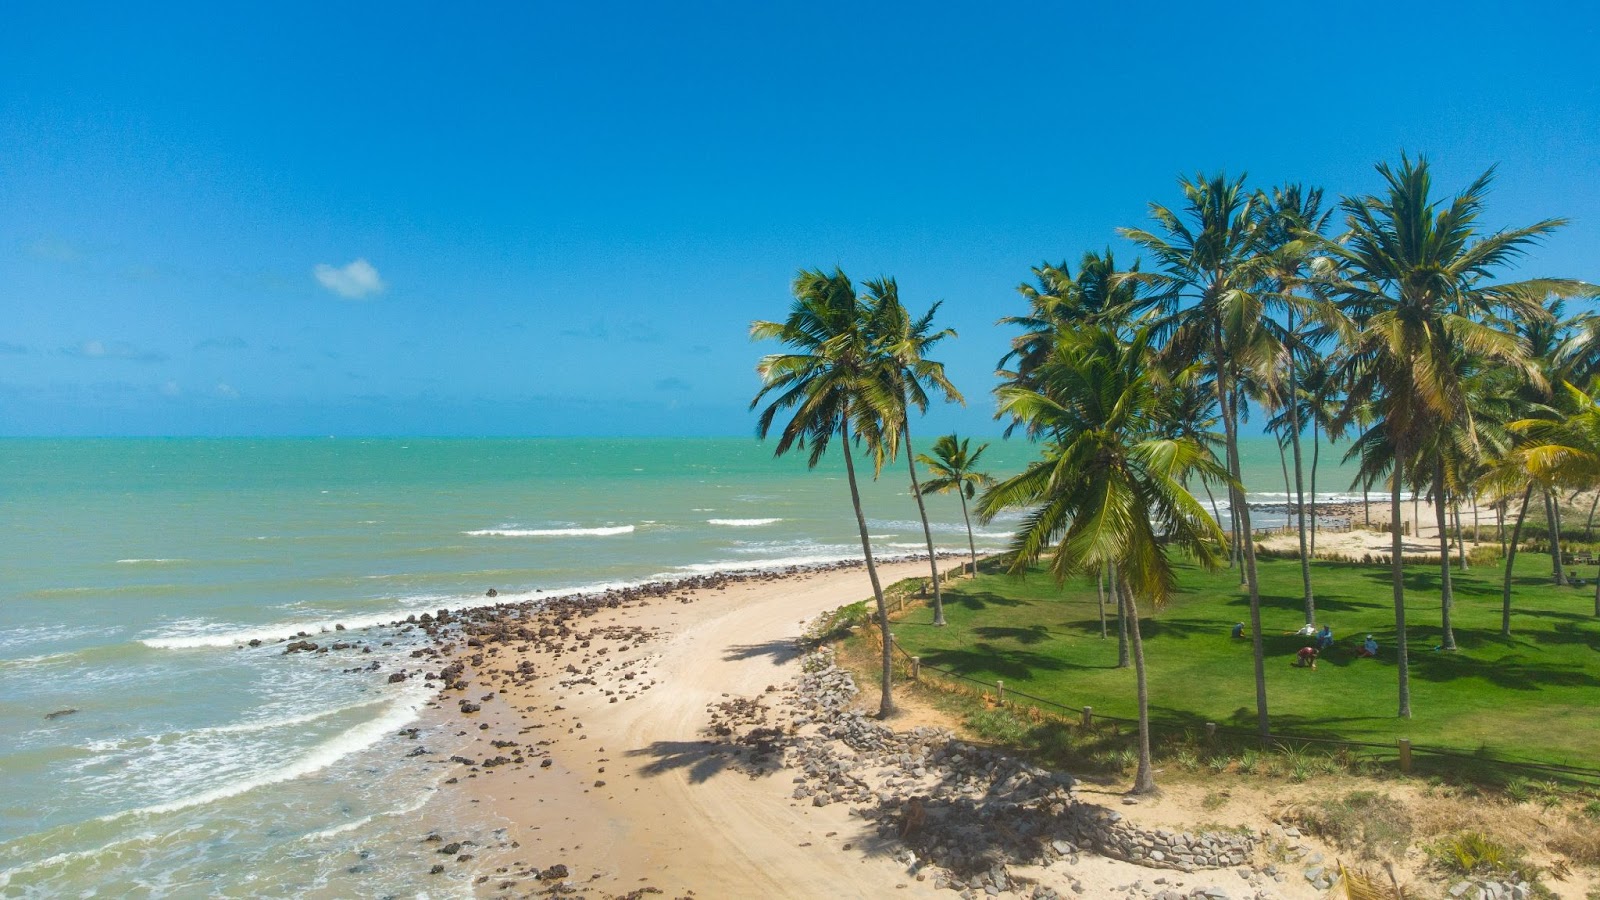 Vista aérea da Praia de Maracajaú. Cú azul e limpo em contraste com o azul esverdeado do mar, em frente à faixa de areia que conta com gramado e coqueiros.